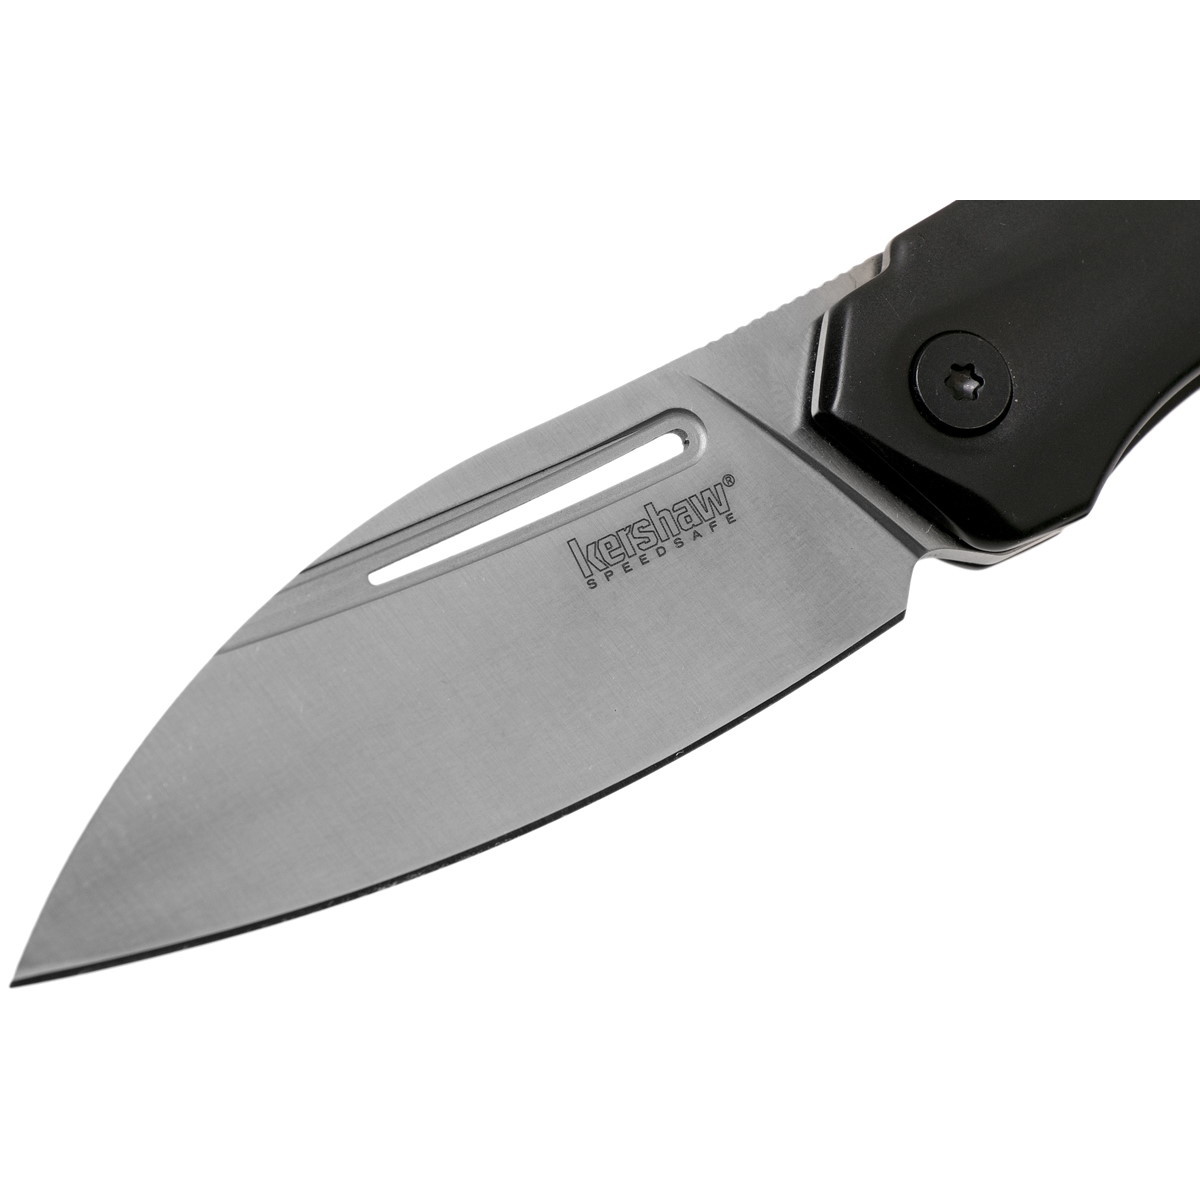 Полуавтоматический складной нож Kershaw Turismo, сталь D2, рукоять нержавеющая сталь - фото 3